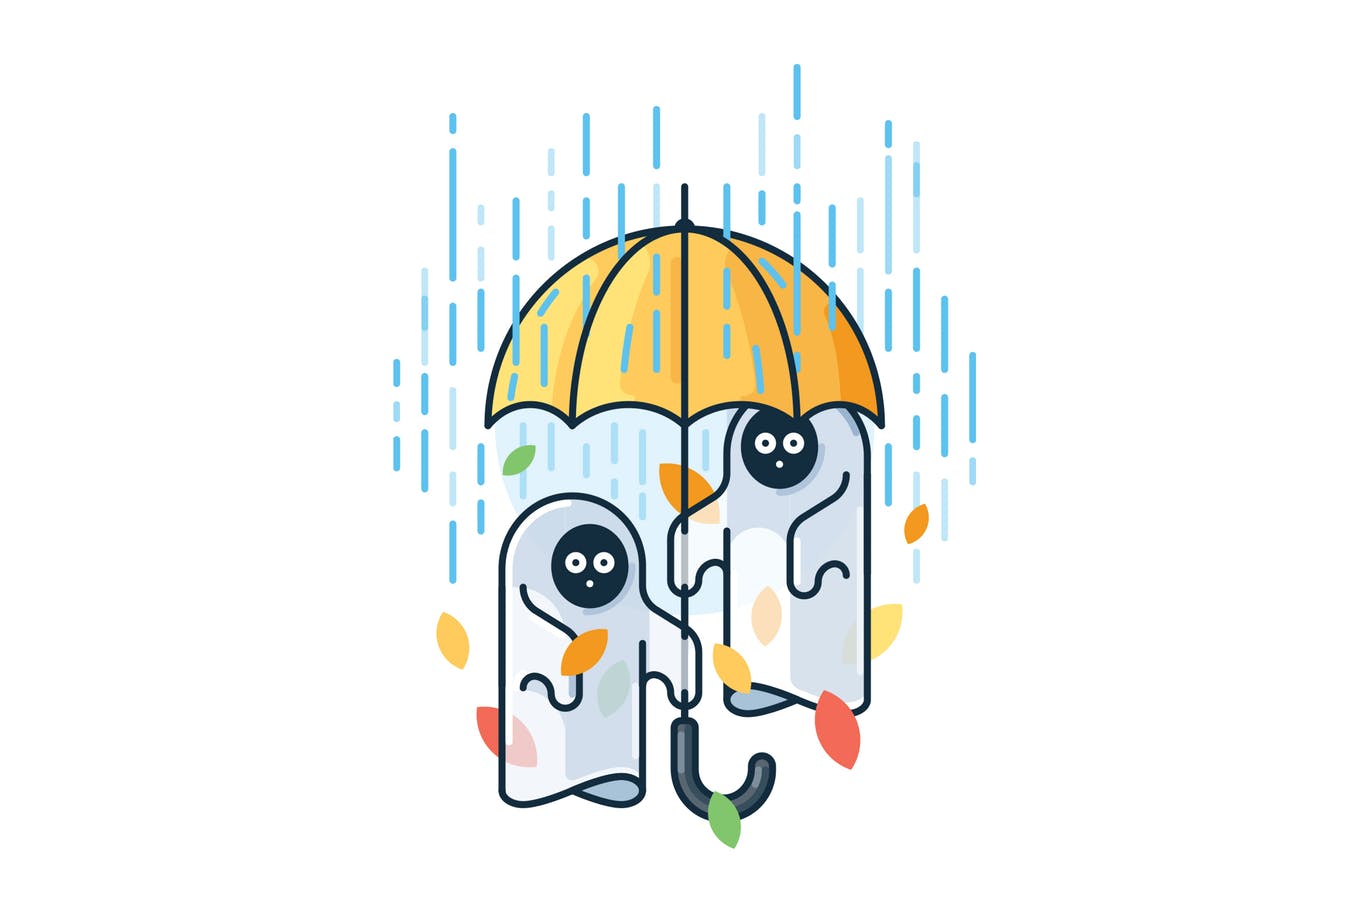 雨中的鬼魂简约线条蚂蚁素材精选手绘插画矢量素材 Ghosts in the rain插图